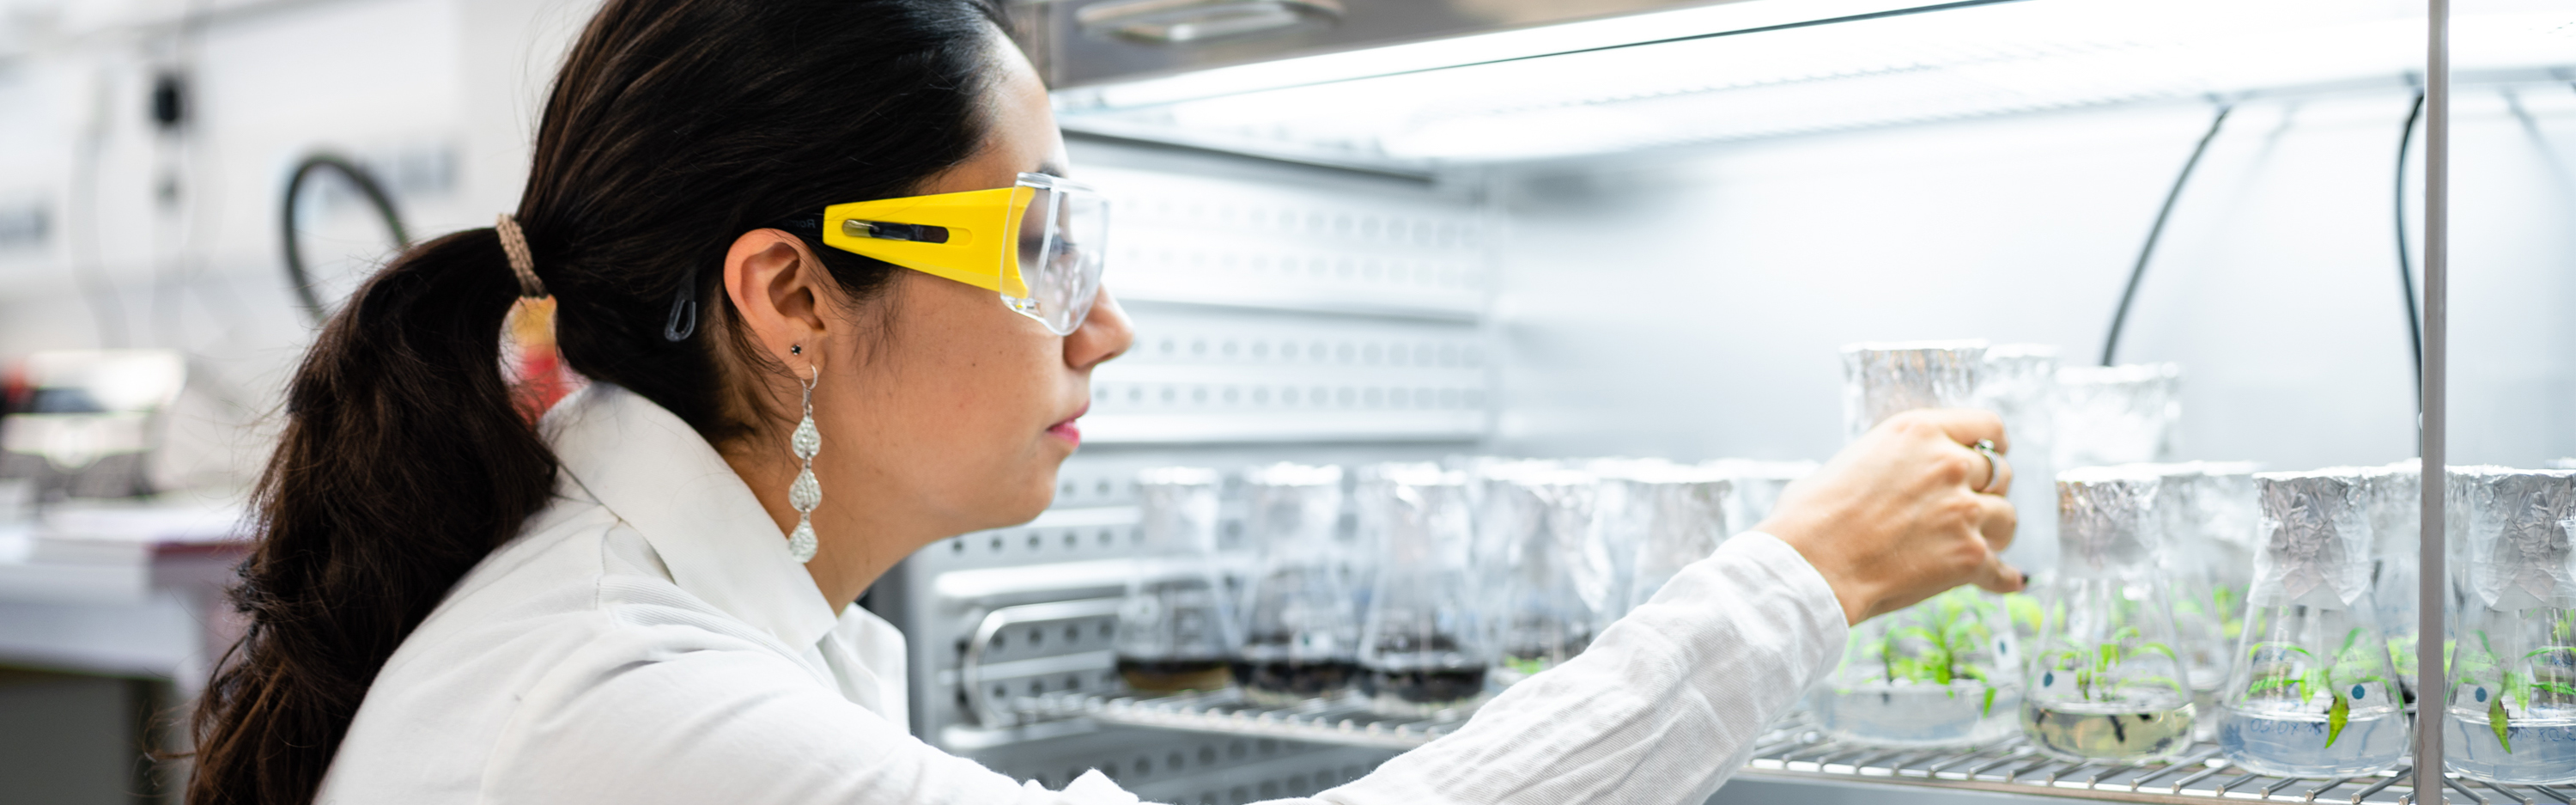 Studentin mit Arbeitsschutzbrille sichtet im Labor-Experiment Pflanzenwachstum in Erlenmeyerkolben